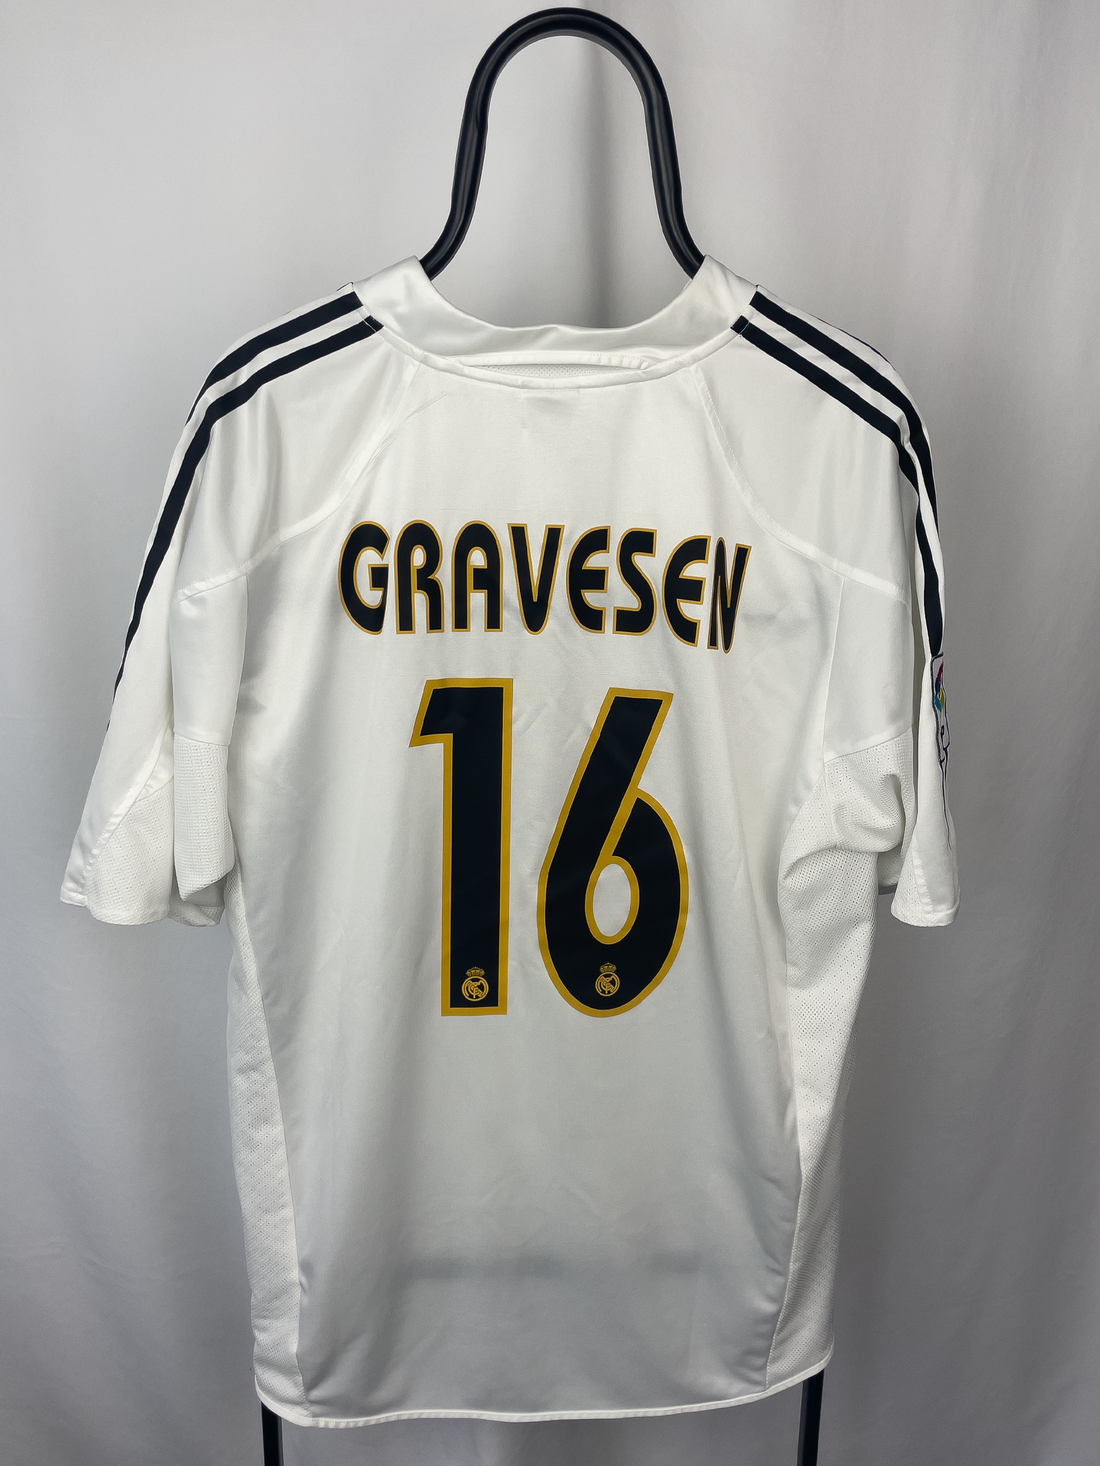 Thomas Gravesen Real Madrid 04/05 hjemmebane trøje - XL